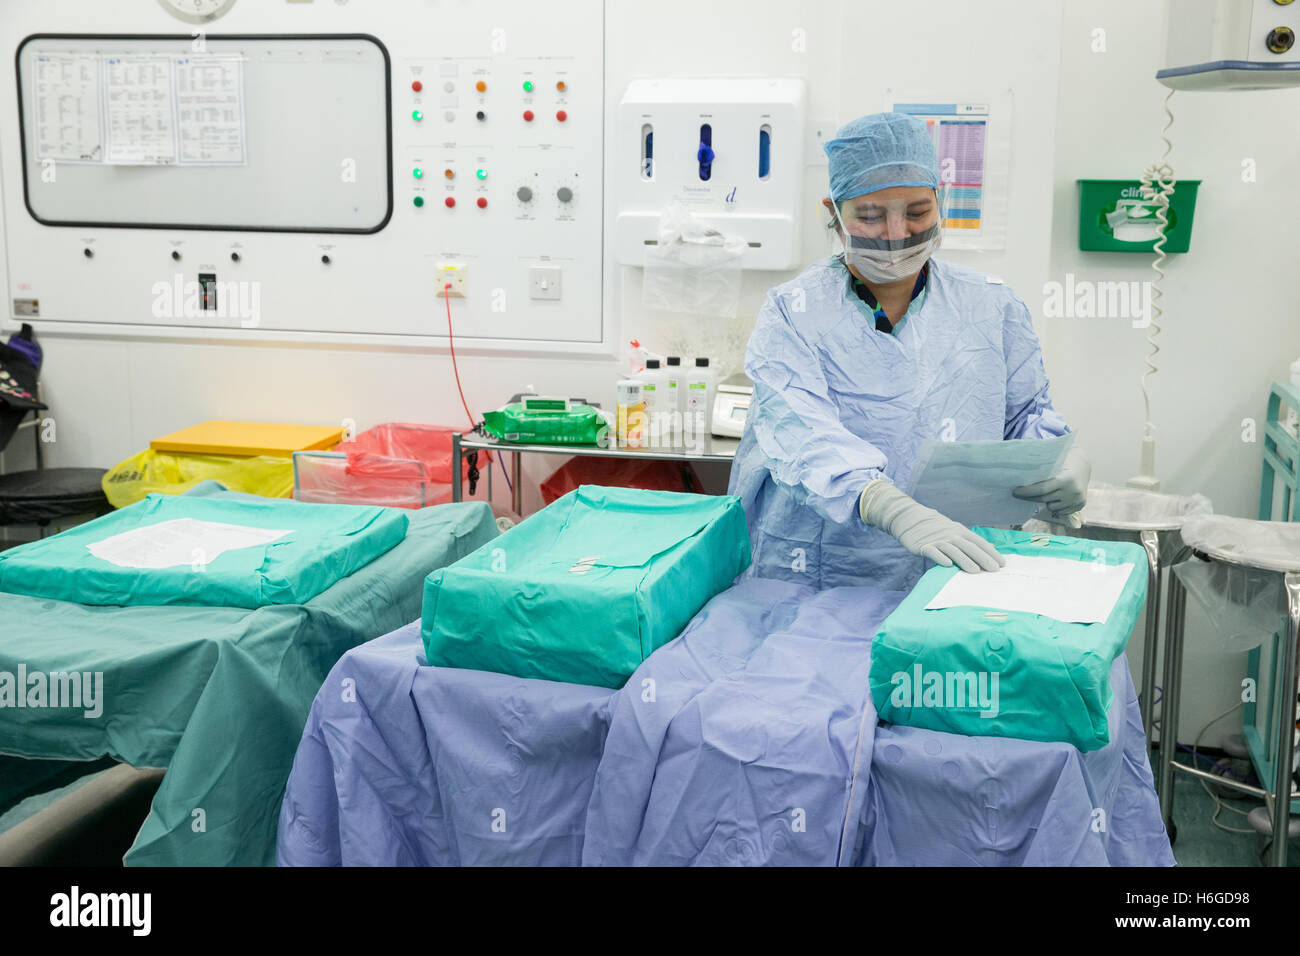 Une infirmière de l'hôpital dans scrubs vérifie le matériel stérile avant de les ouvrir dans un théâtre d'opération des hôpitaux Banque D'Images